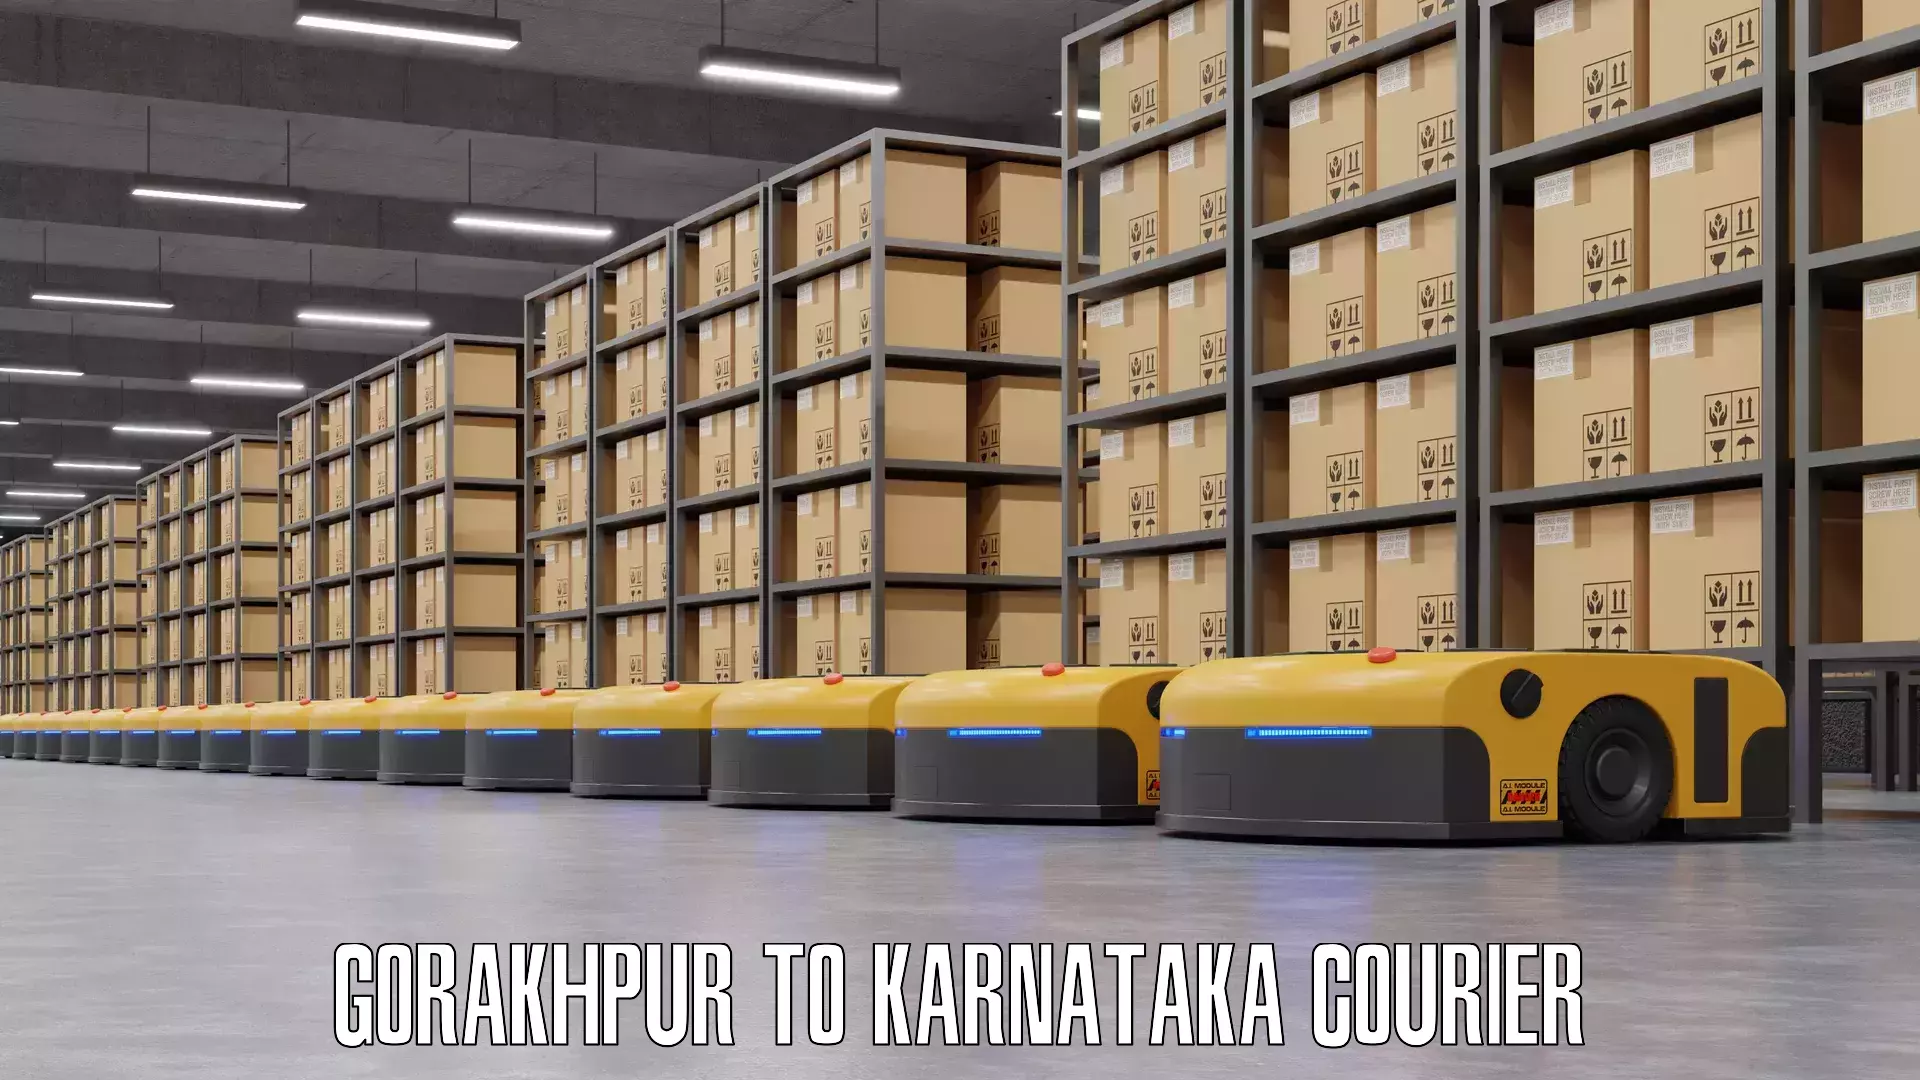 Luggage delivery system Gorakhpur to Karnataka